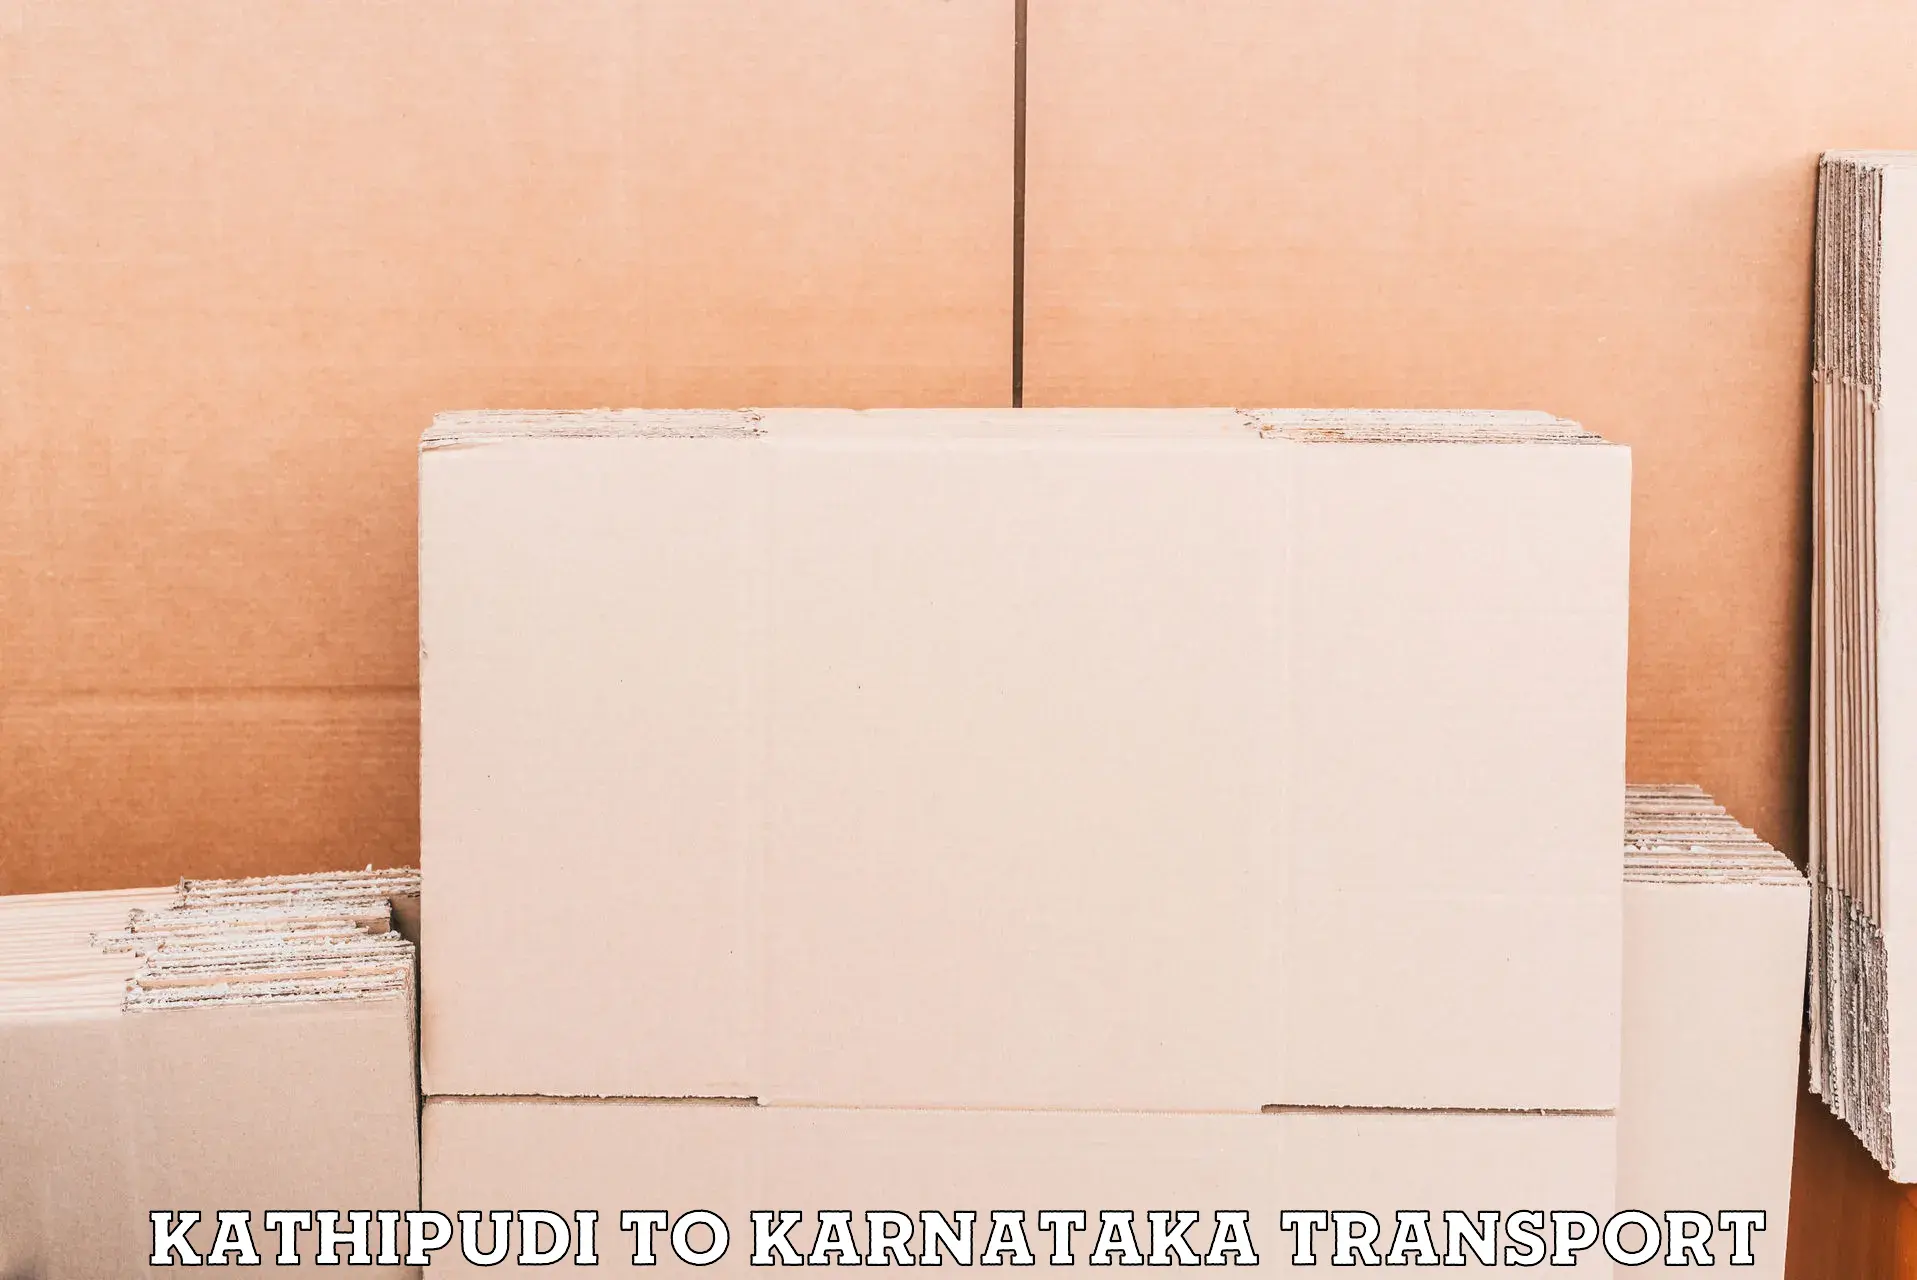 Lorry transport service Kathipudi to Gokak